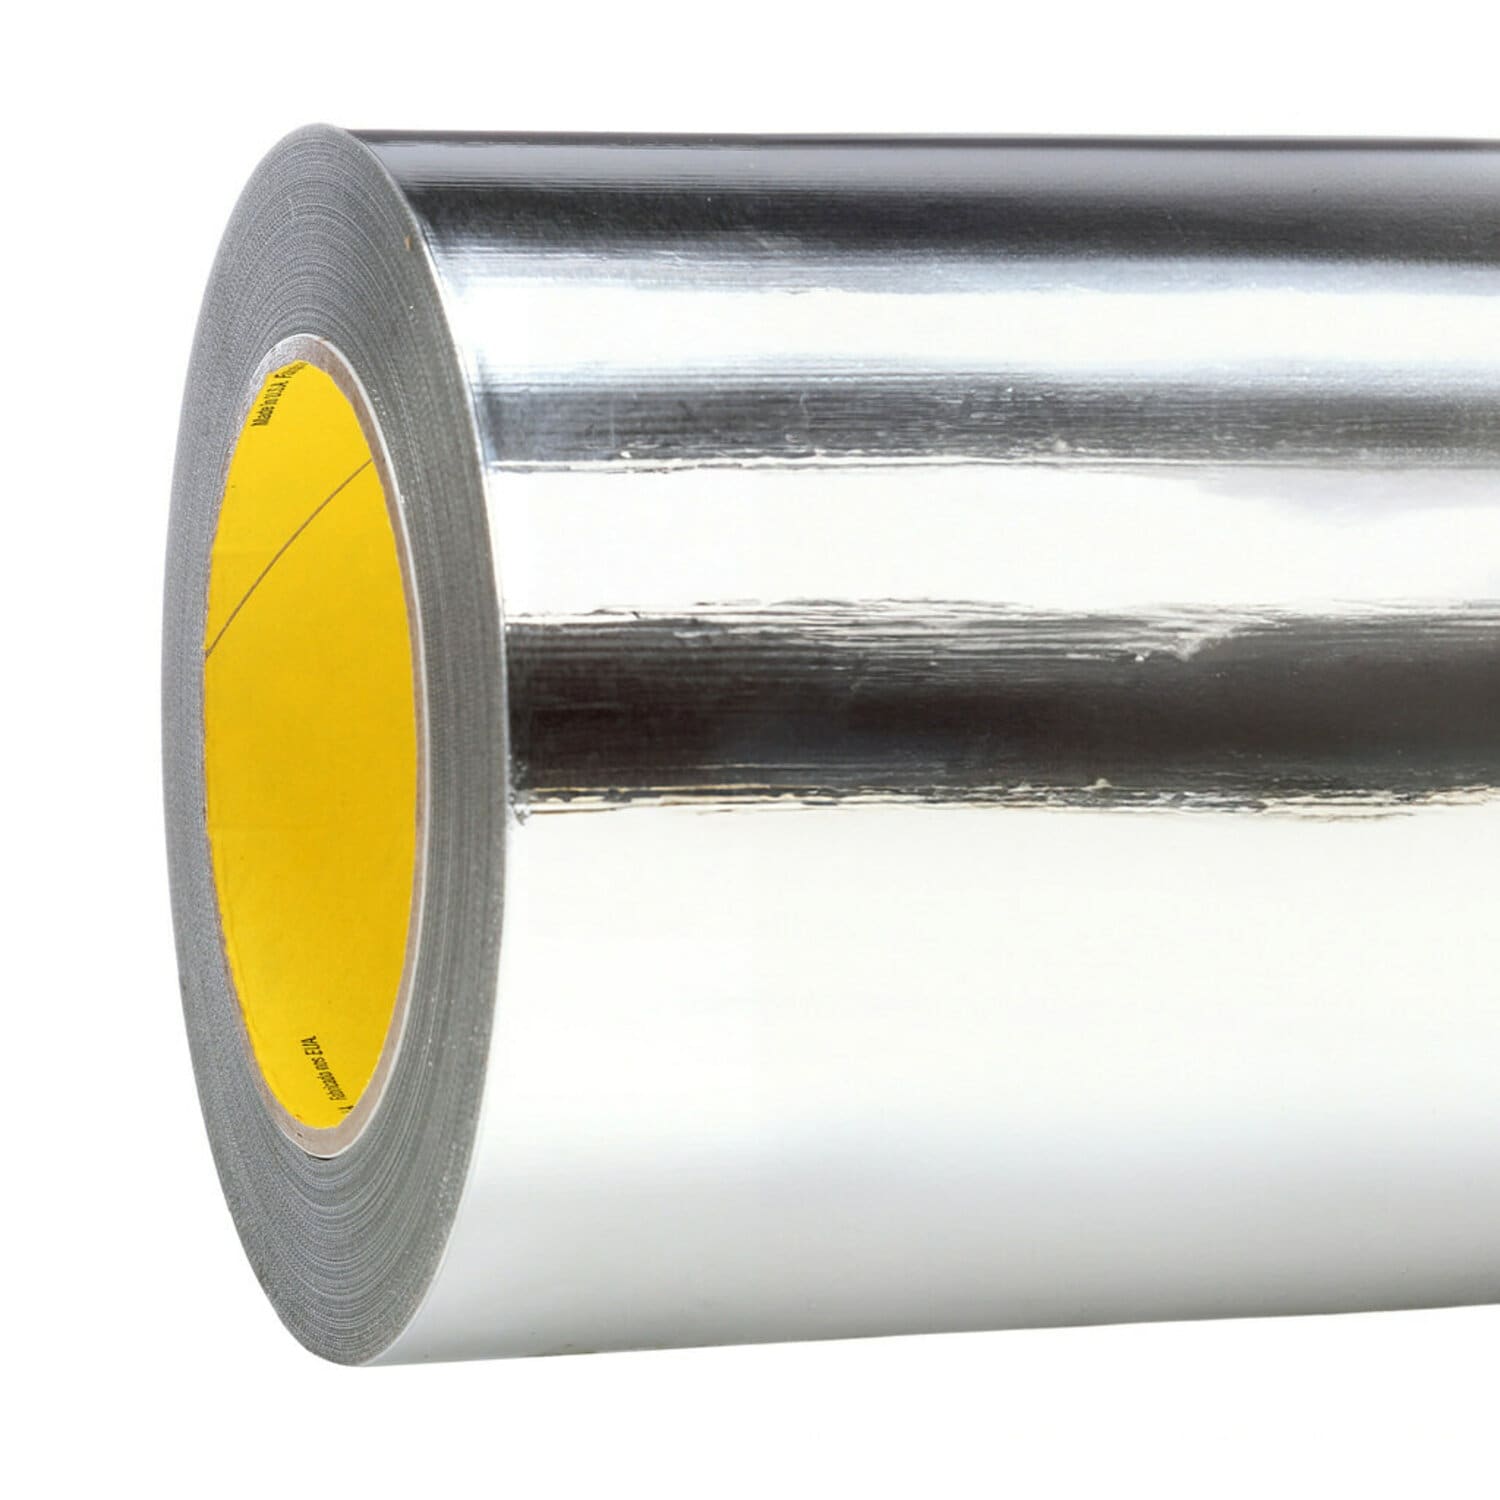 7010337247 - 3M Aluminum Foil Tape 427, Silver, 18 in x 60 yd, 4.6 mil, 1 roll per
case